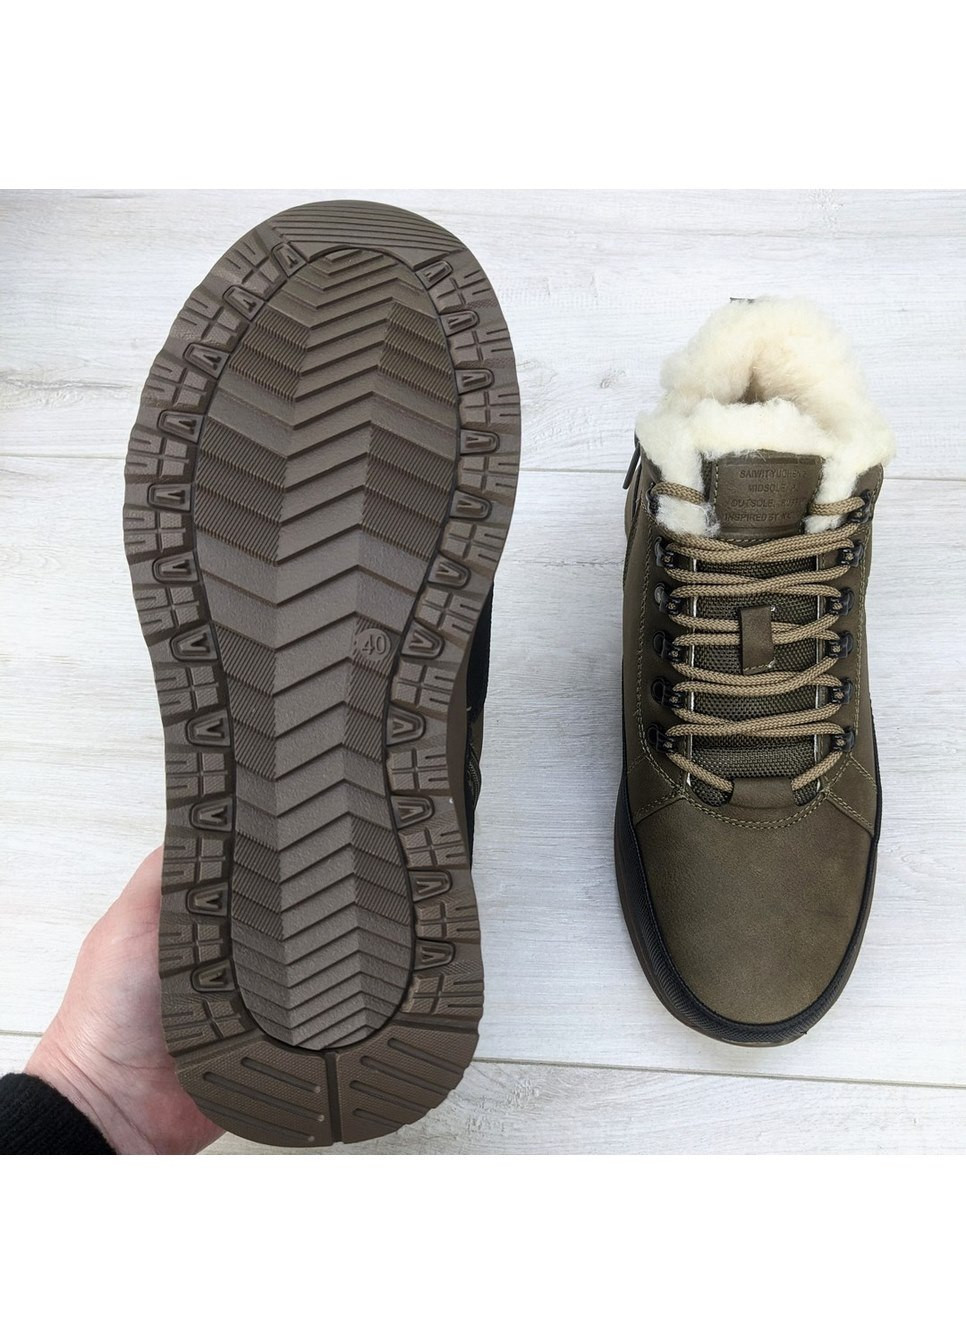 Хаки зимние ботинки мужские зимние коричневые эко-кожа SAIWIT